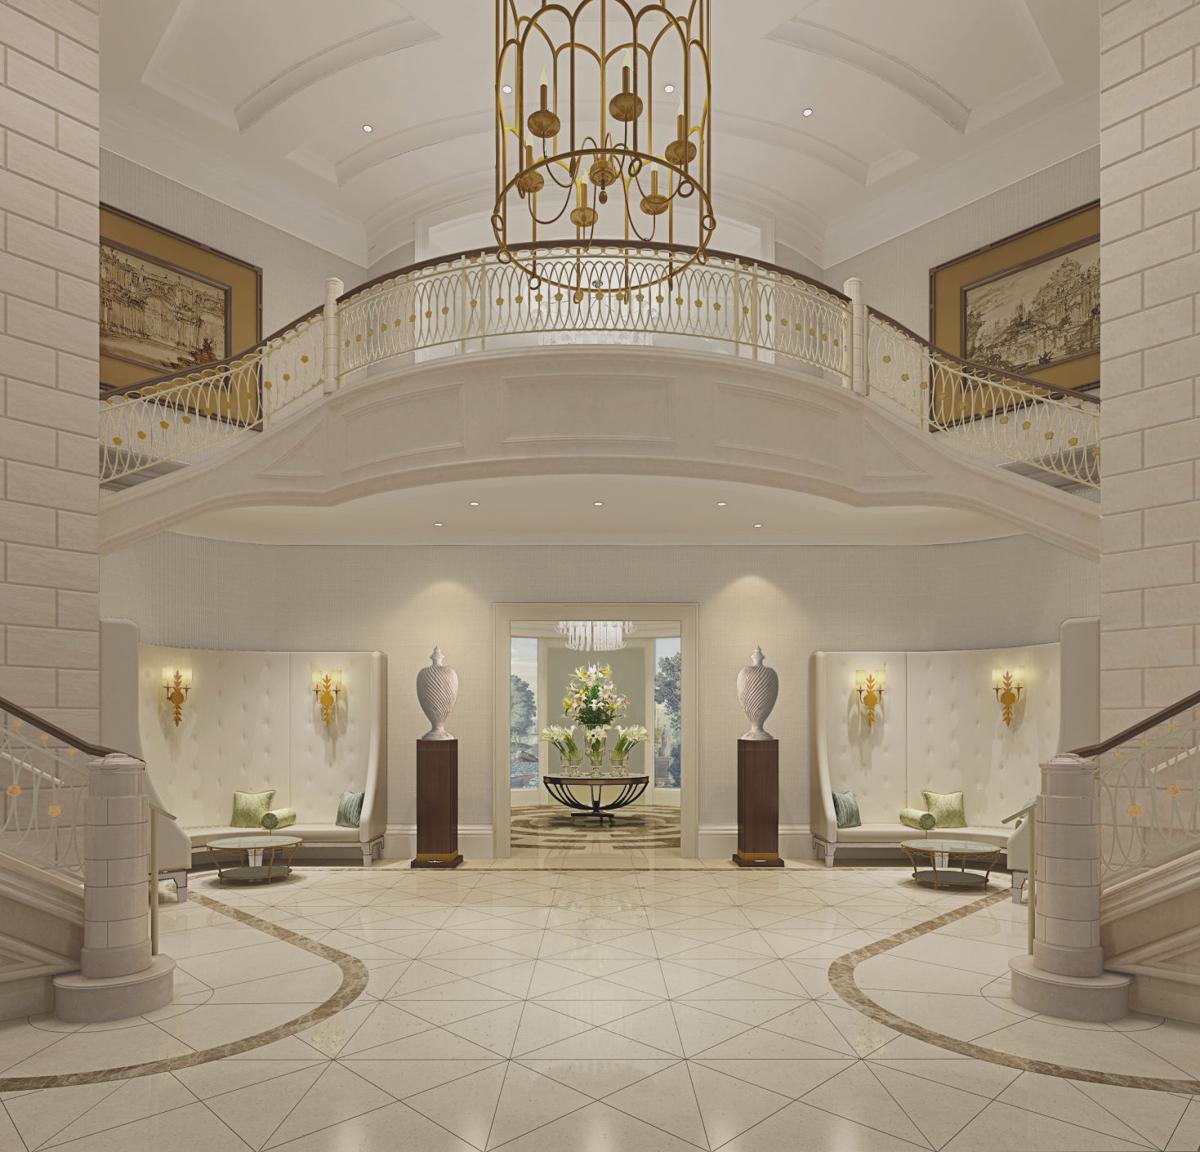 Bennett's new luxury hotel raises bar for Charleston rates | Business ...